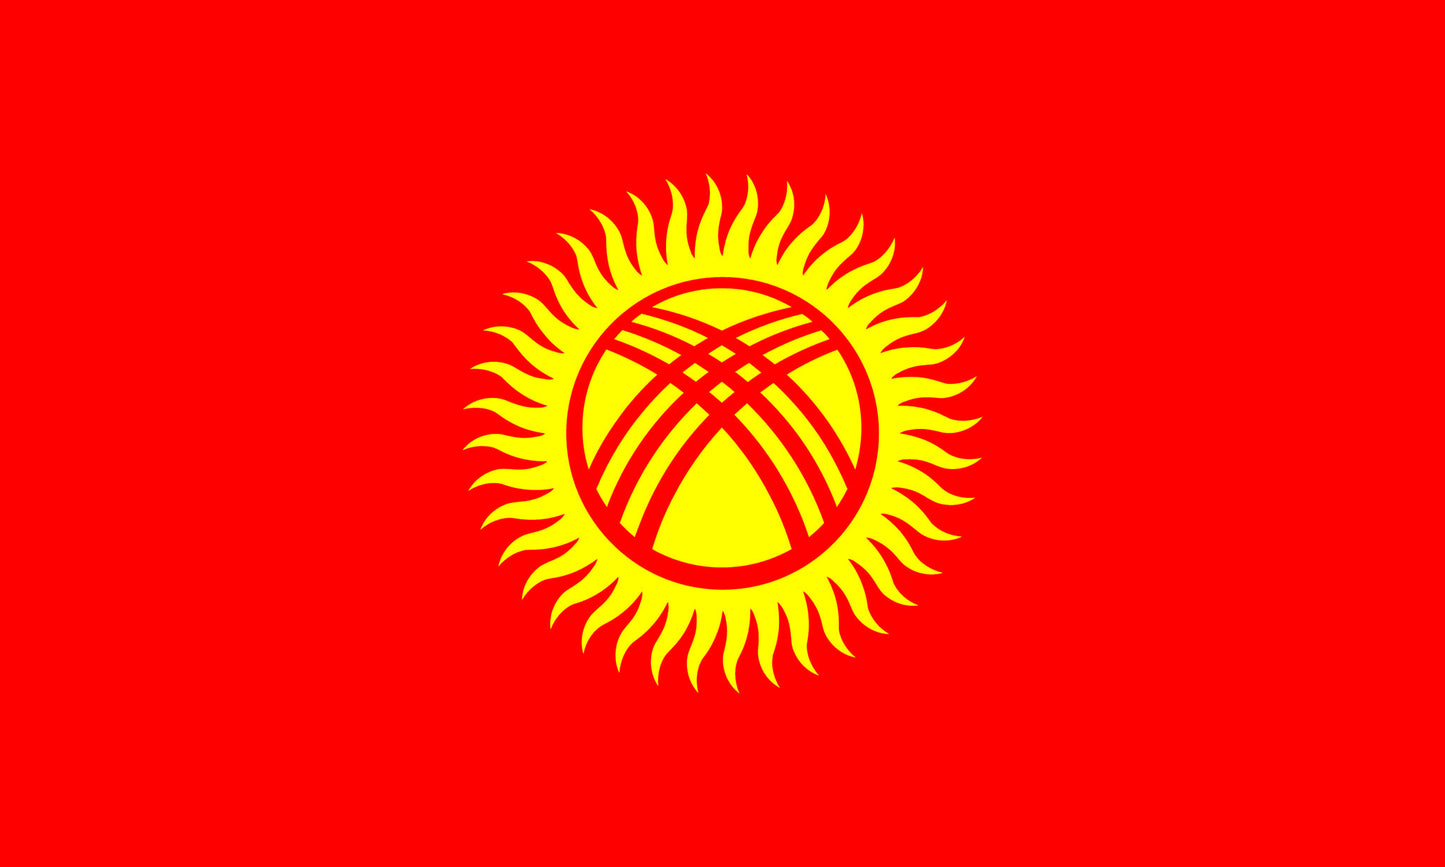 INR-KYR-15x22-1 - государственный флаг Республики Кыргызстан, размер: 15х22 см, материал: атлас. Печать с одной стороны. Подставка и шток приобретаются отдельно